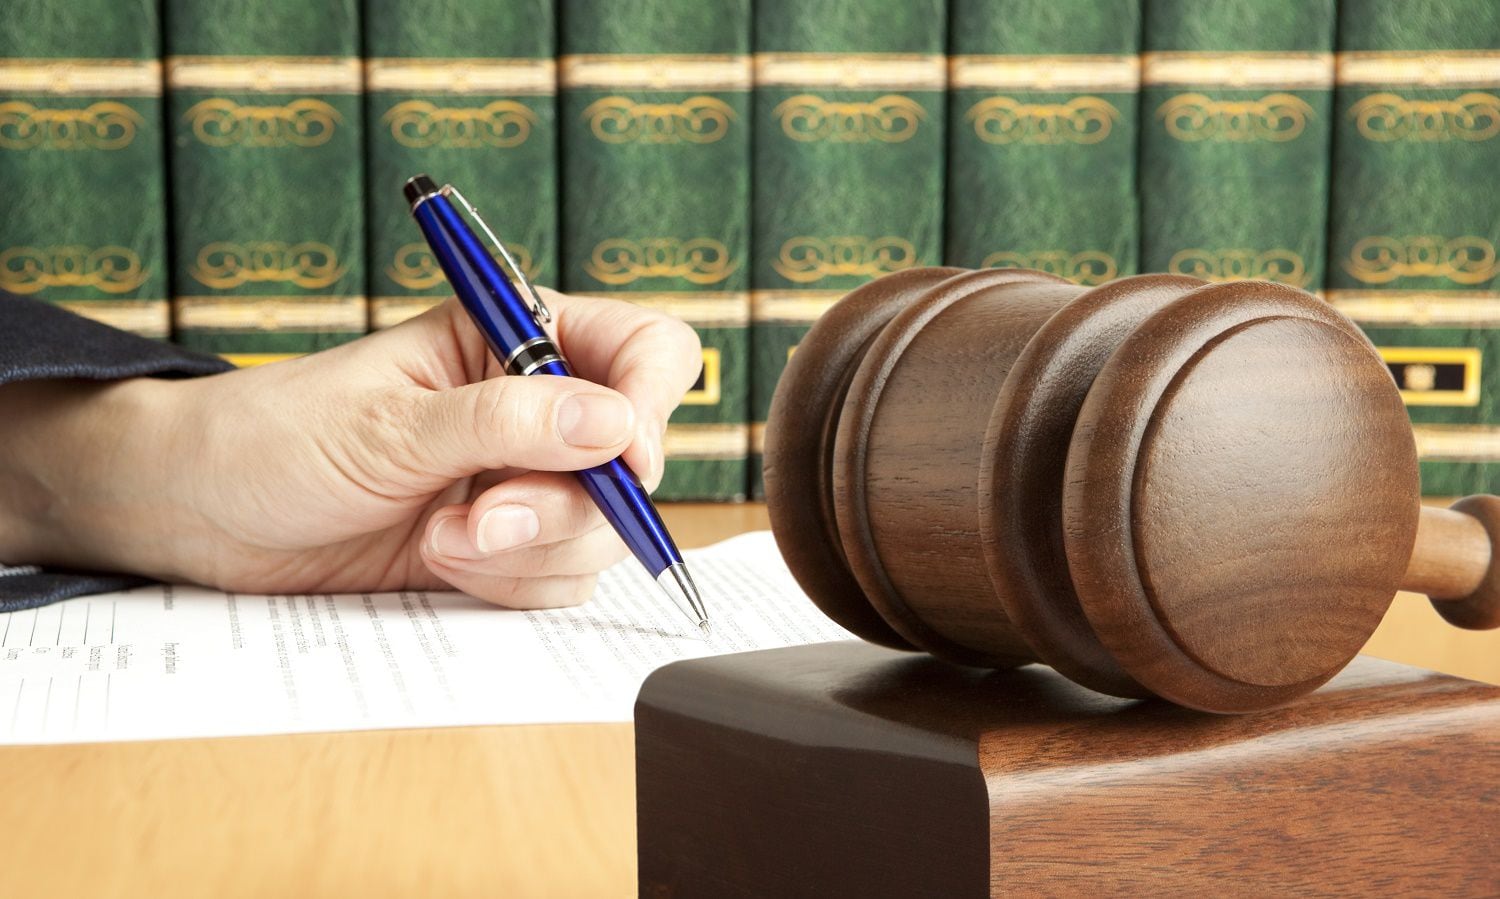 Legal (Shutterstock)